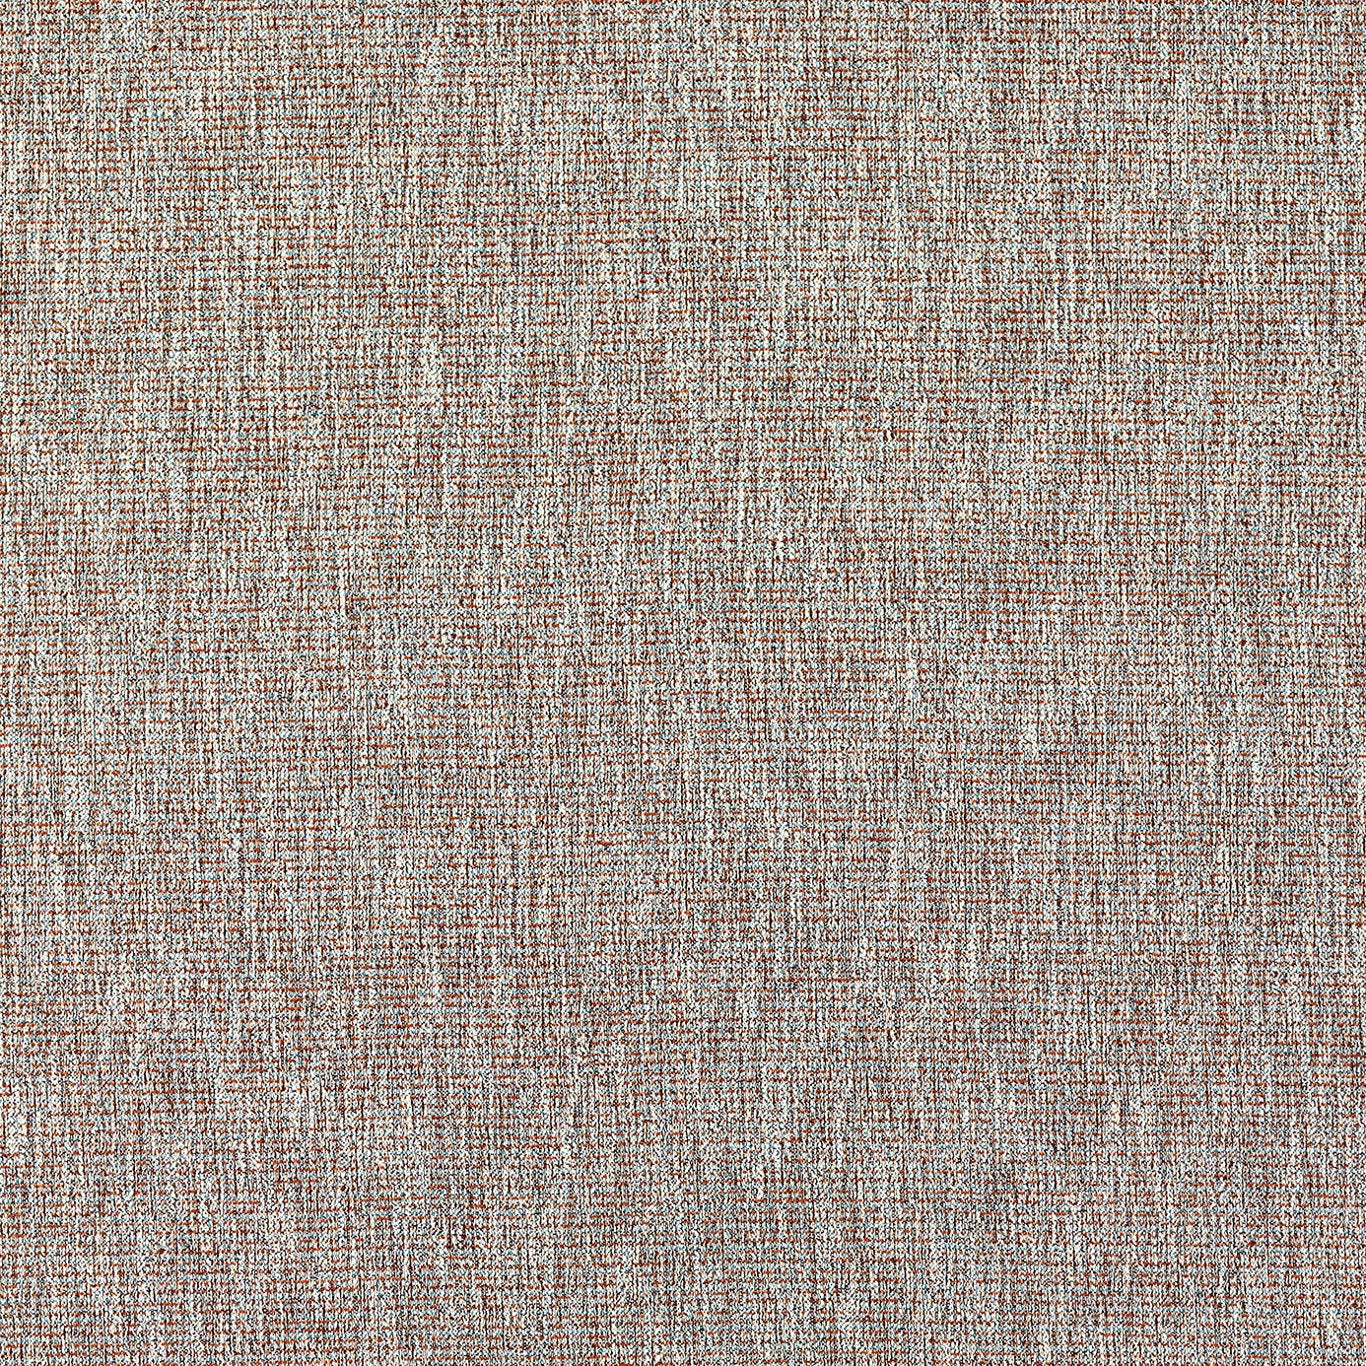 Avani Fabric by Clarke & Clarke - F1527/07 - Teal/Spice